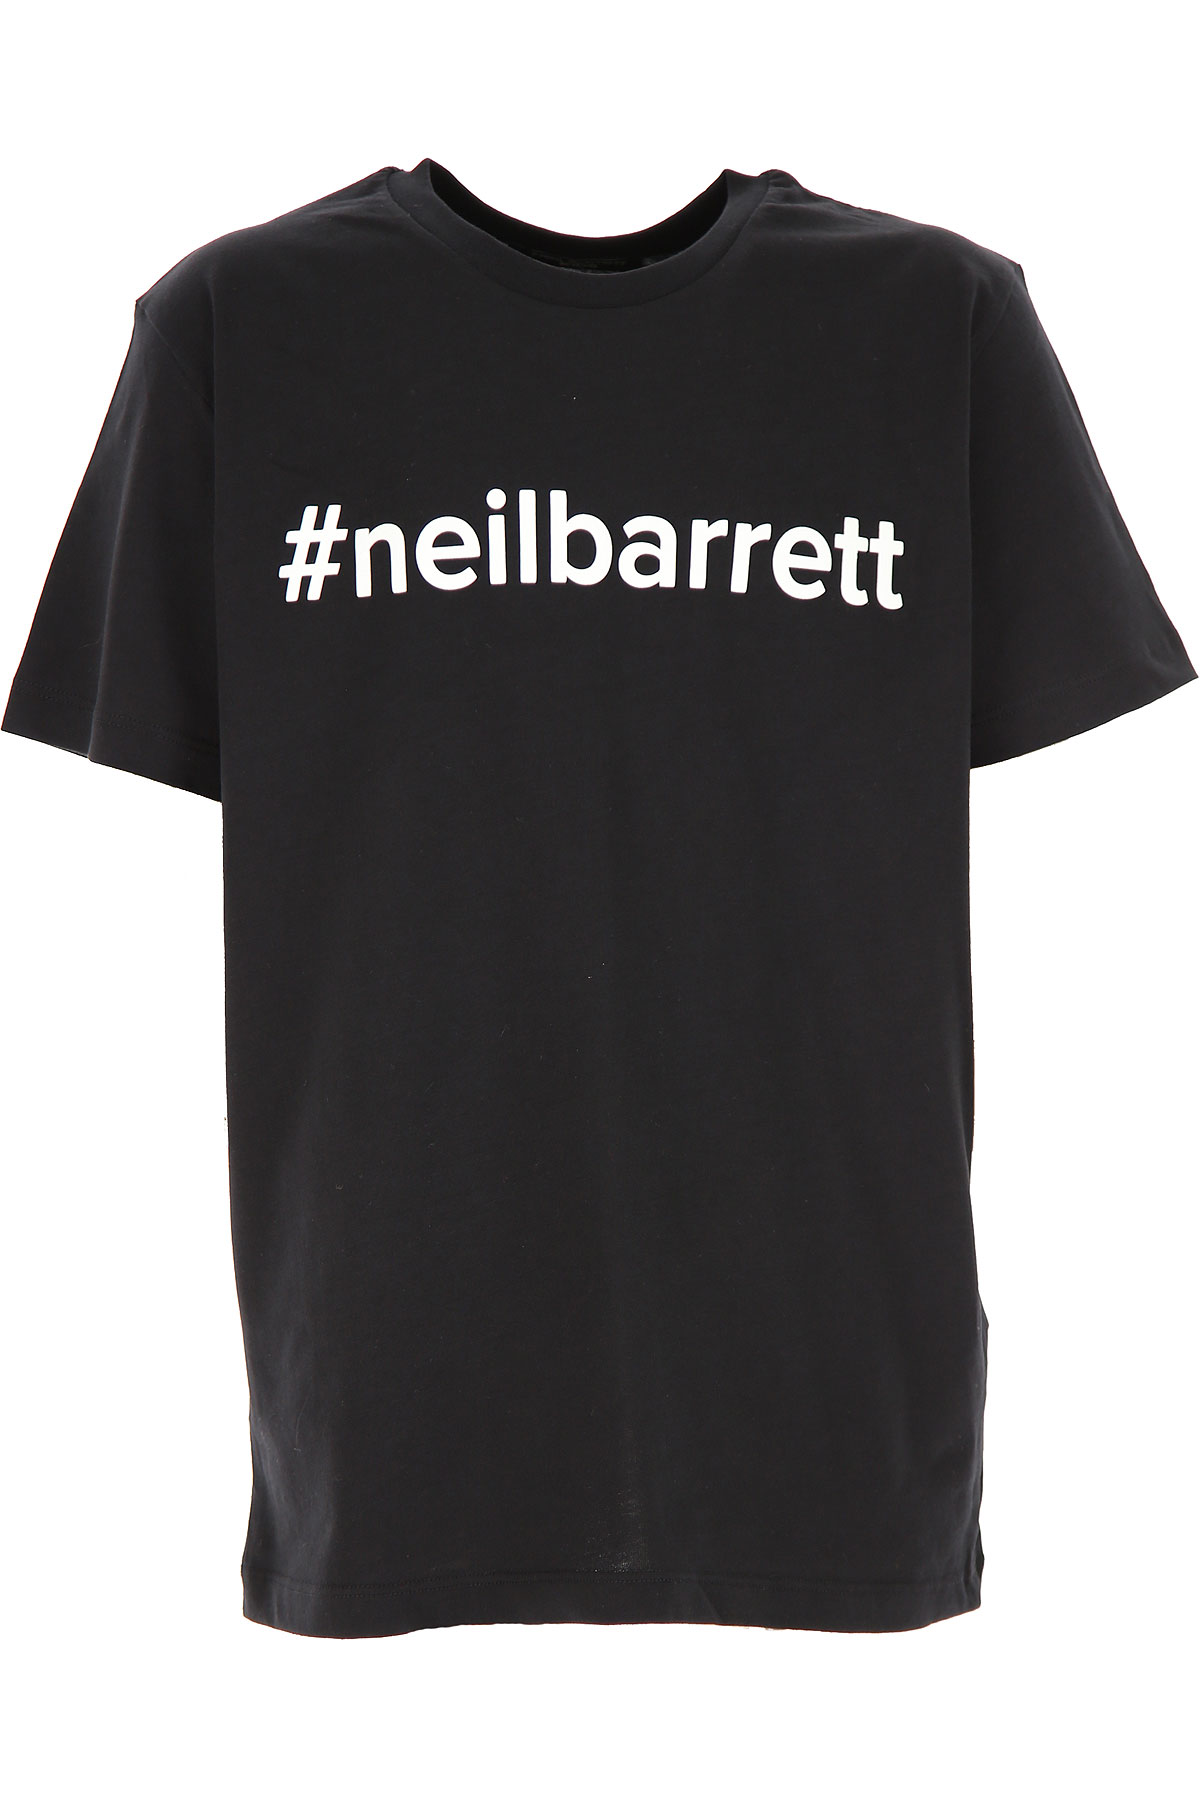 Neil Barrett Kinder T-Shirt für Jungen Günstig im Sale, Schwarz, Baumwolle, 2017, 10Y 12Y 8Y